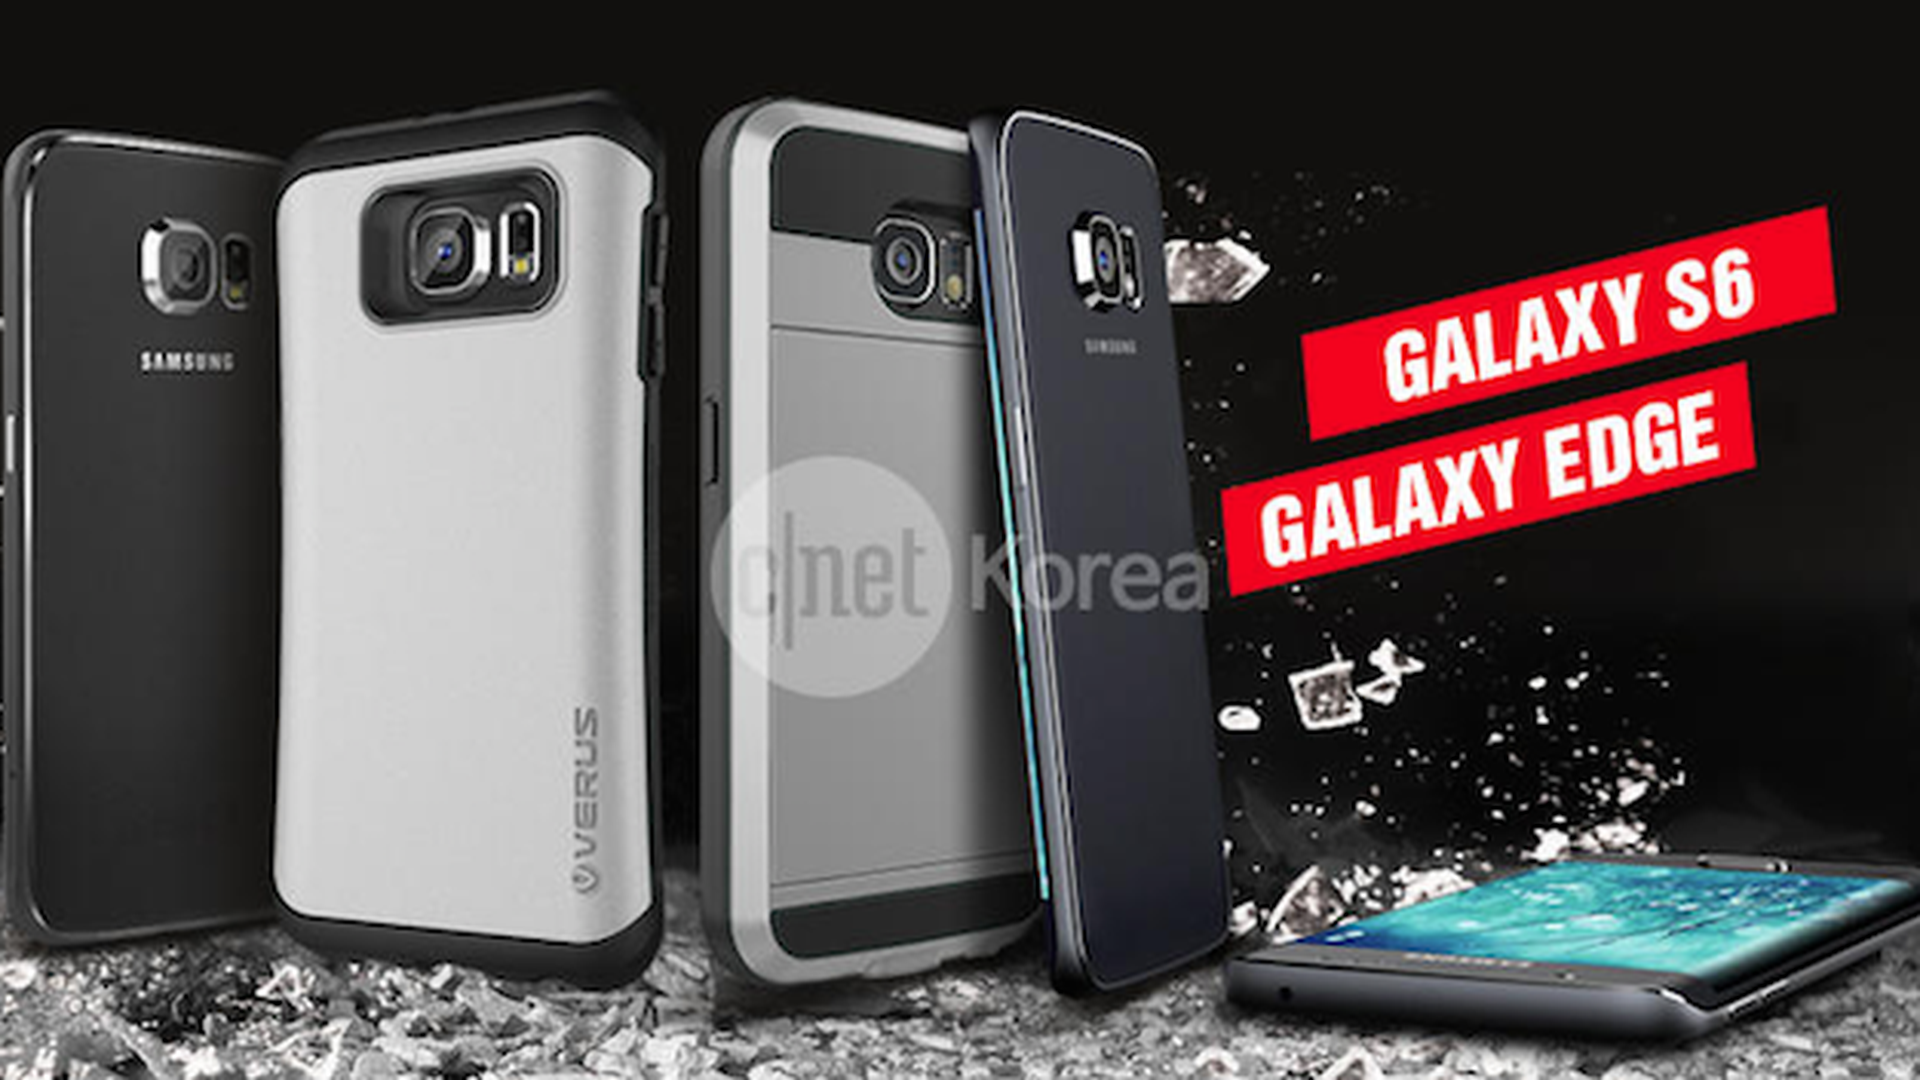 Uno de los diseños del Samsung Galaxy S6 hecho por el fabricante de fundas Verus que muestra un Galaxy S6 con pantalla curvada